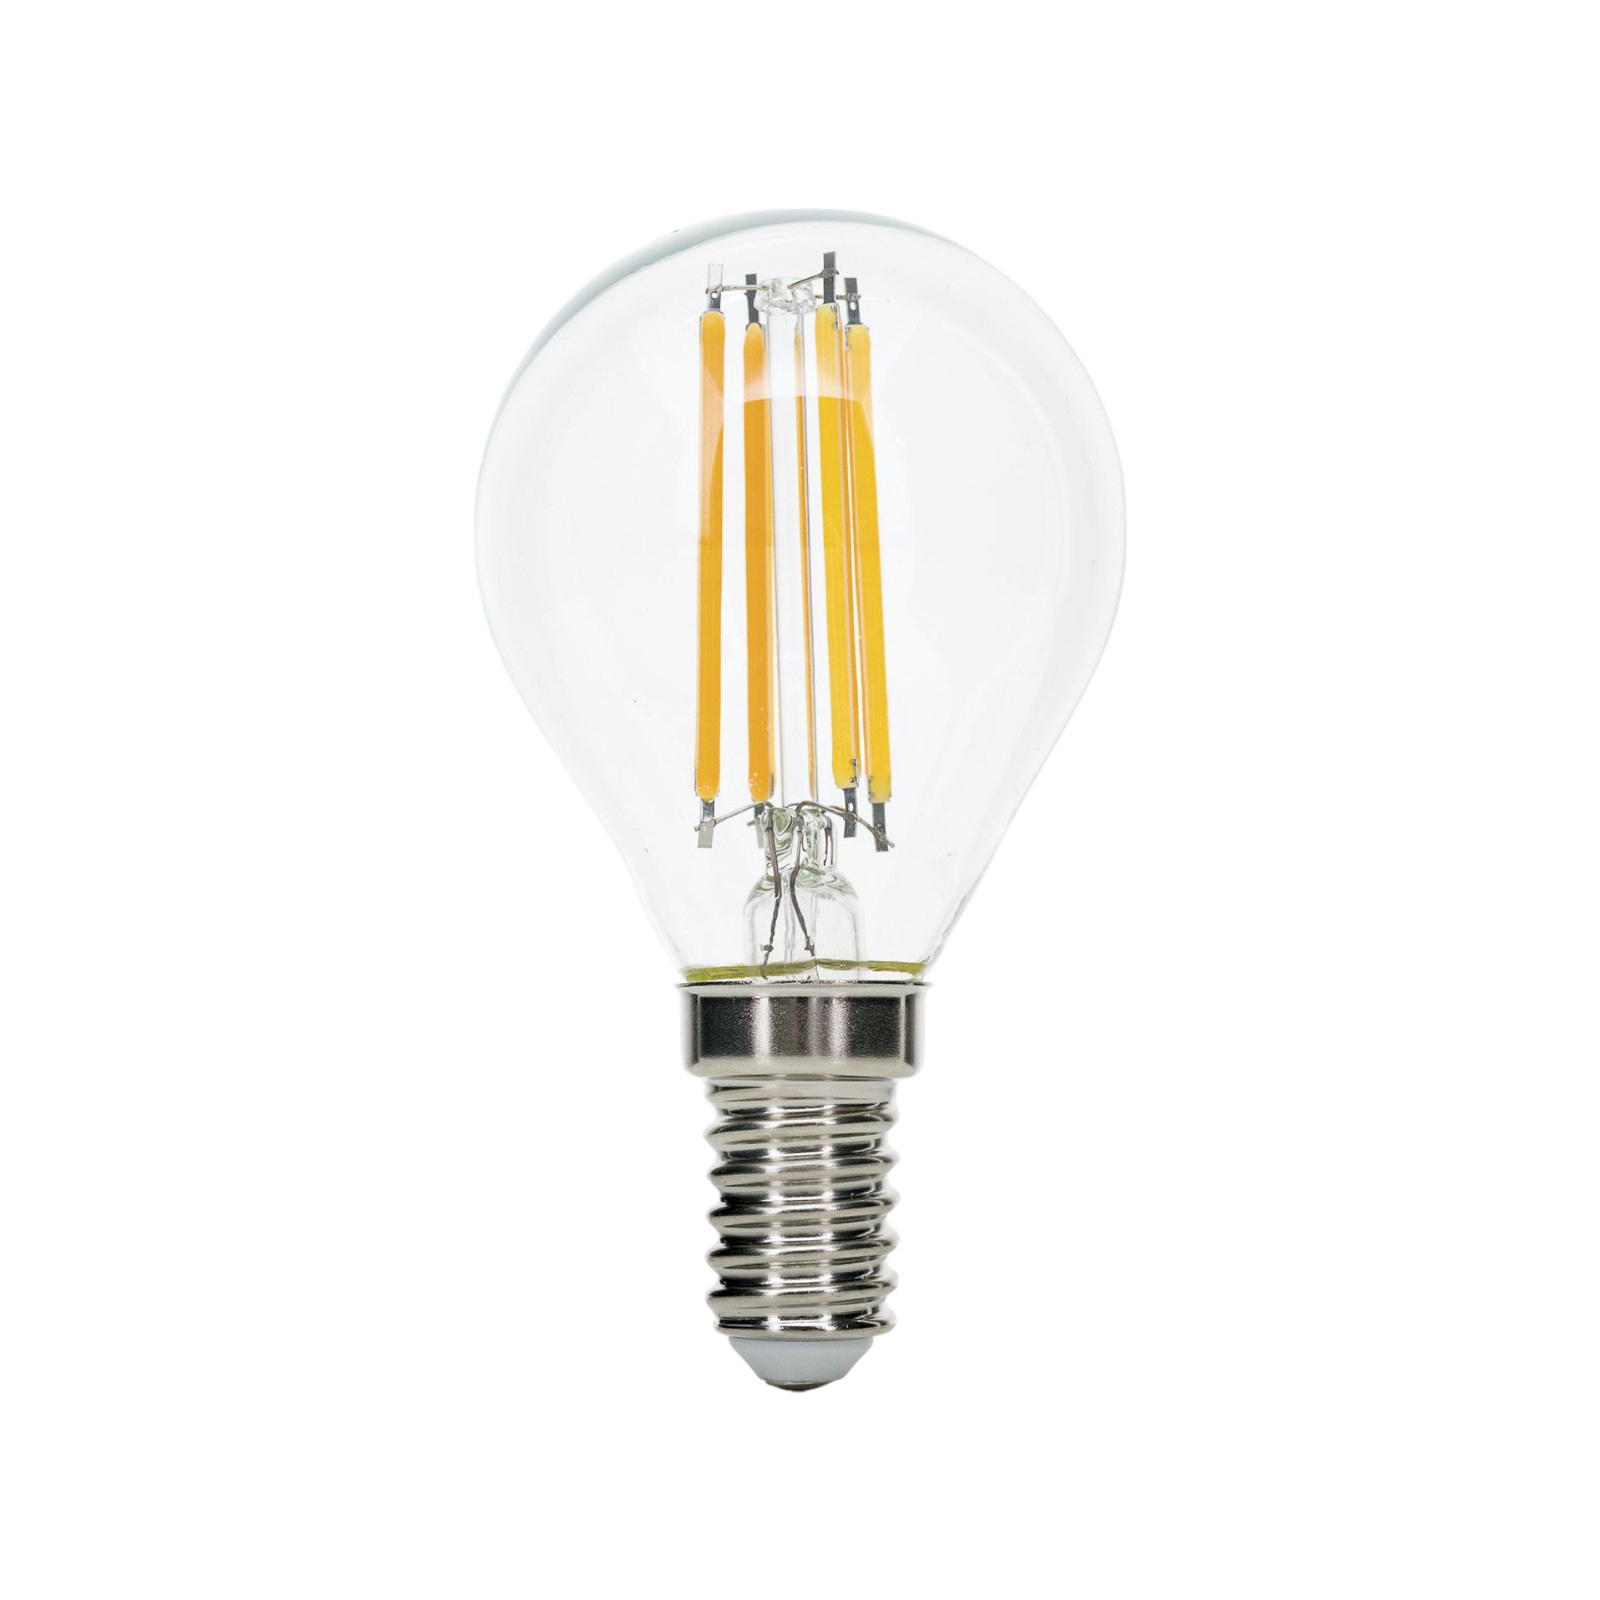 Ampoule LED Filament E14 G45 claire 6W 827 720lm à intensité variable